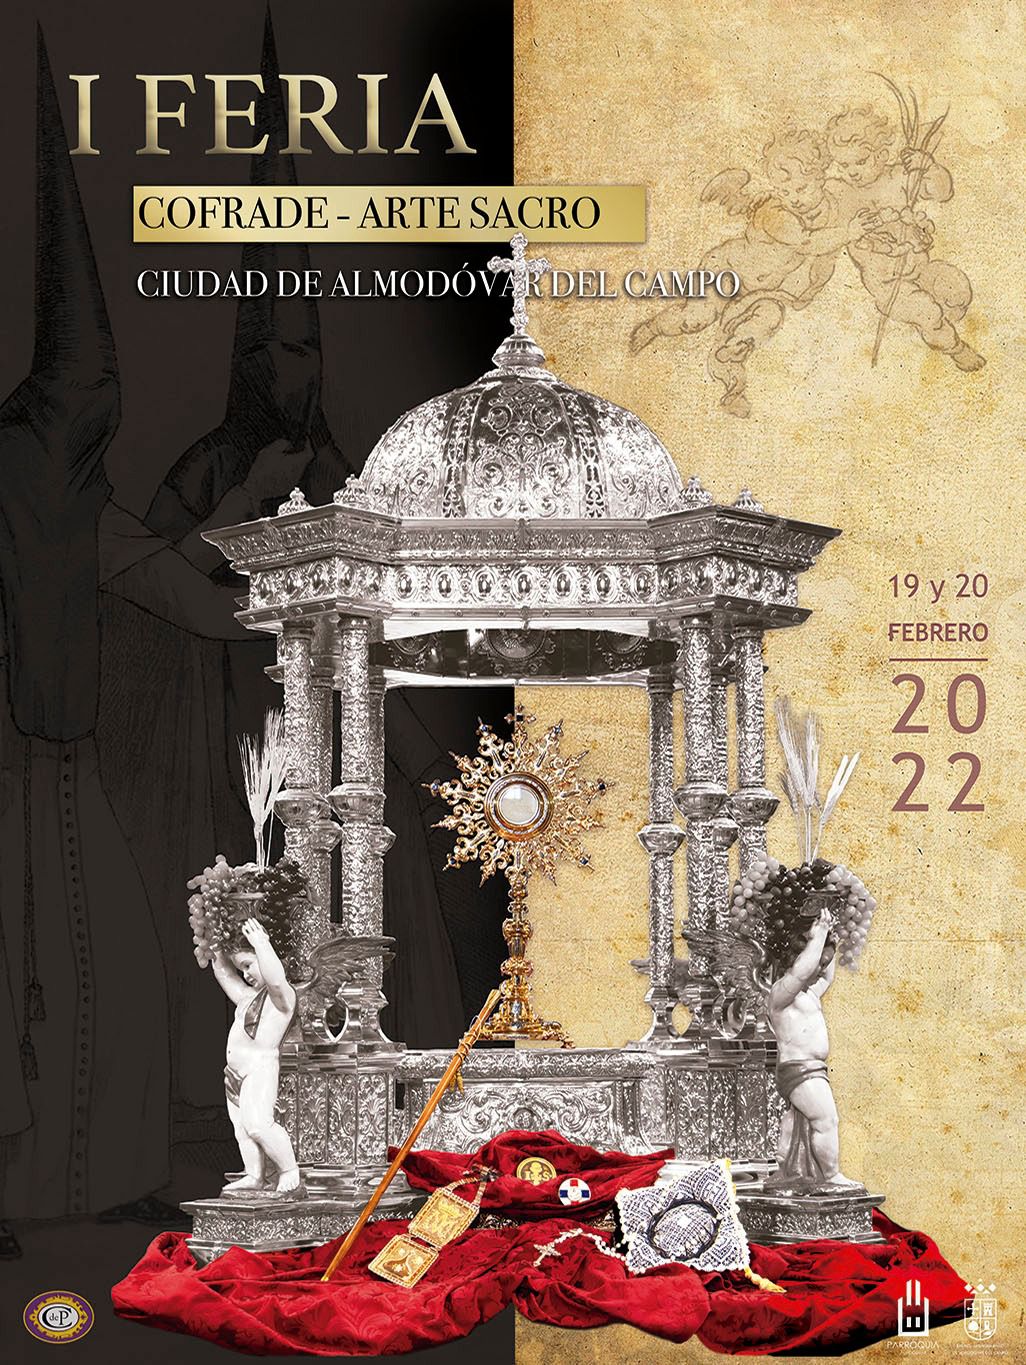 I Feria Cofrade en Almodovar del Campo. 19 y 20 de febrero 2022